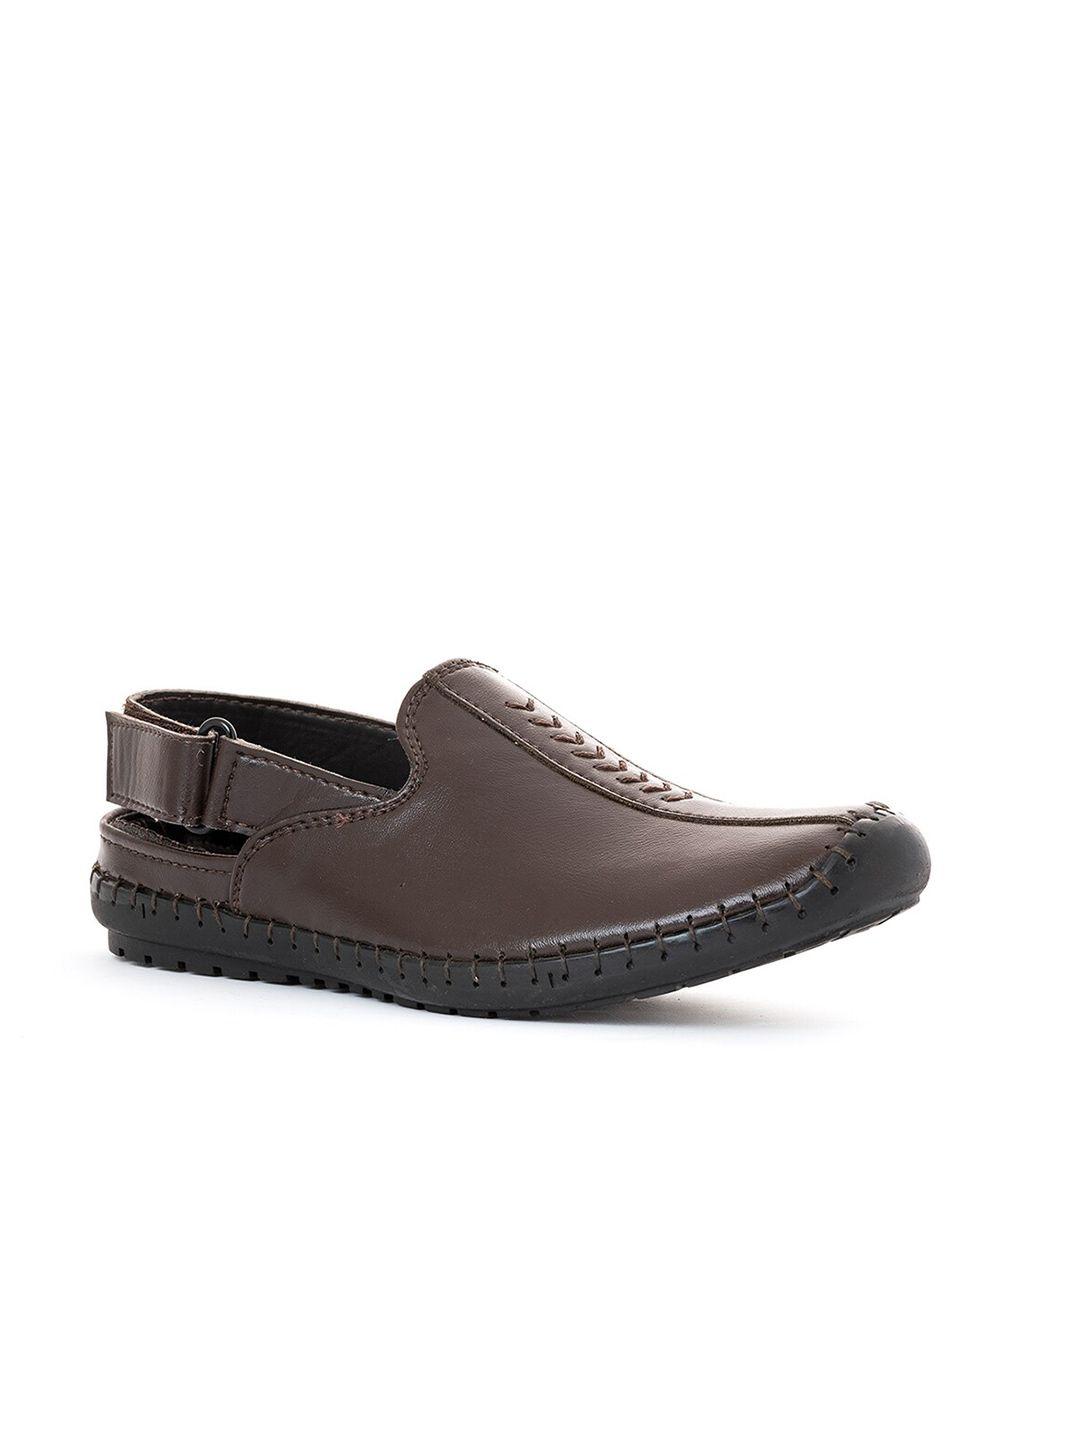 khadims-boys-brown-shoe-style-sandals